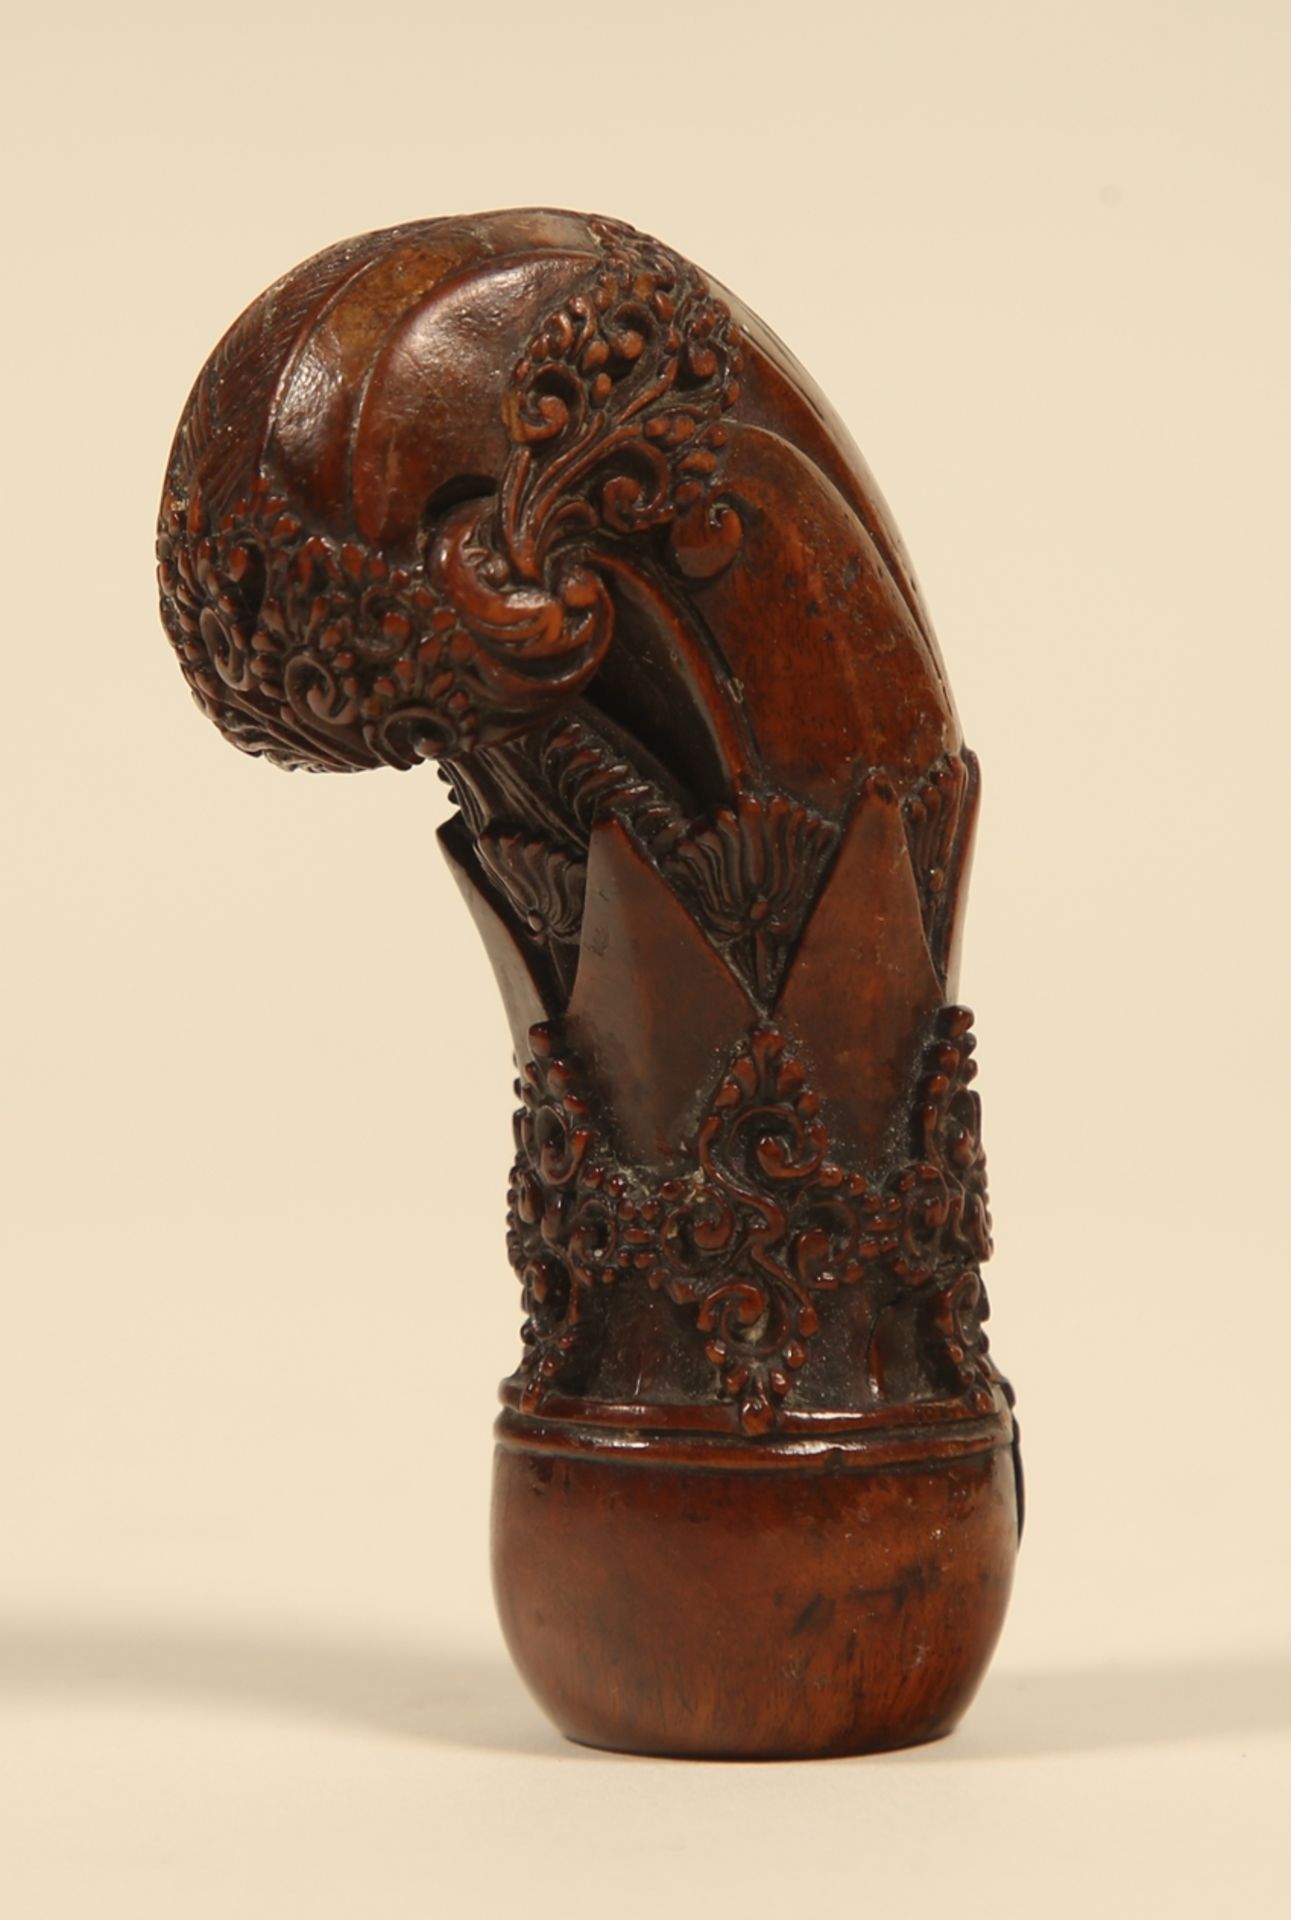 Krisgriff. Holz mit erhabenen Verschneidungen. Java oder Madura, 19. Jh. H 8,5 cm